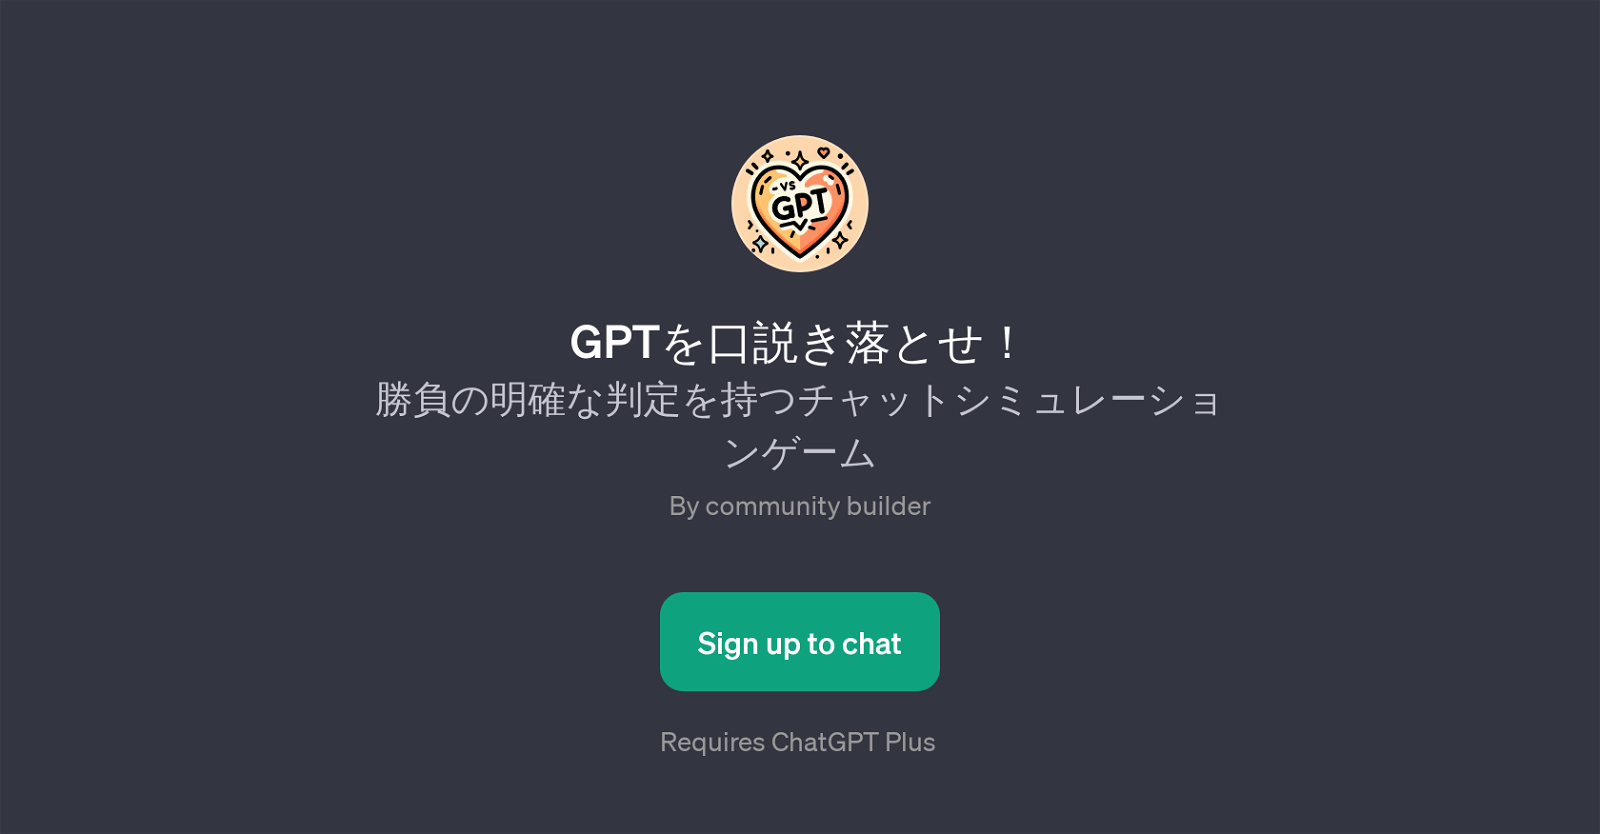 GPT! website